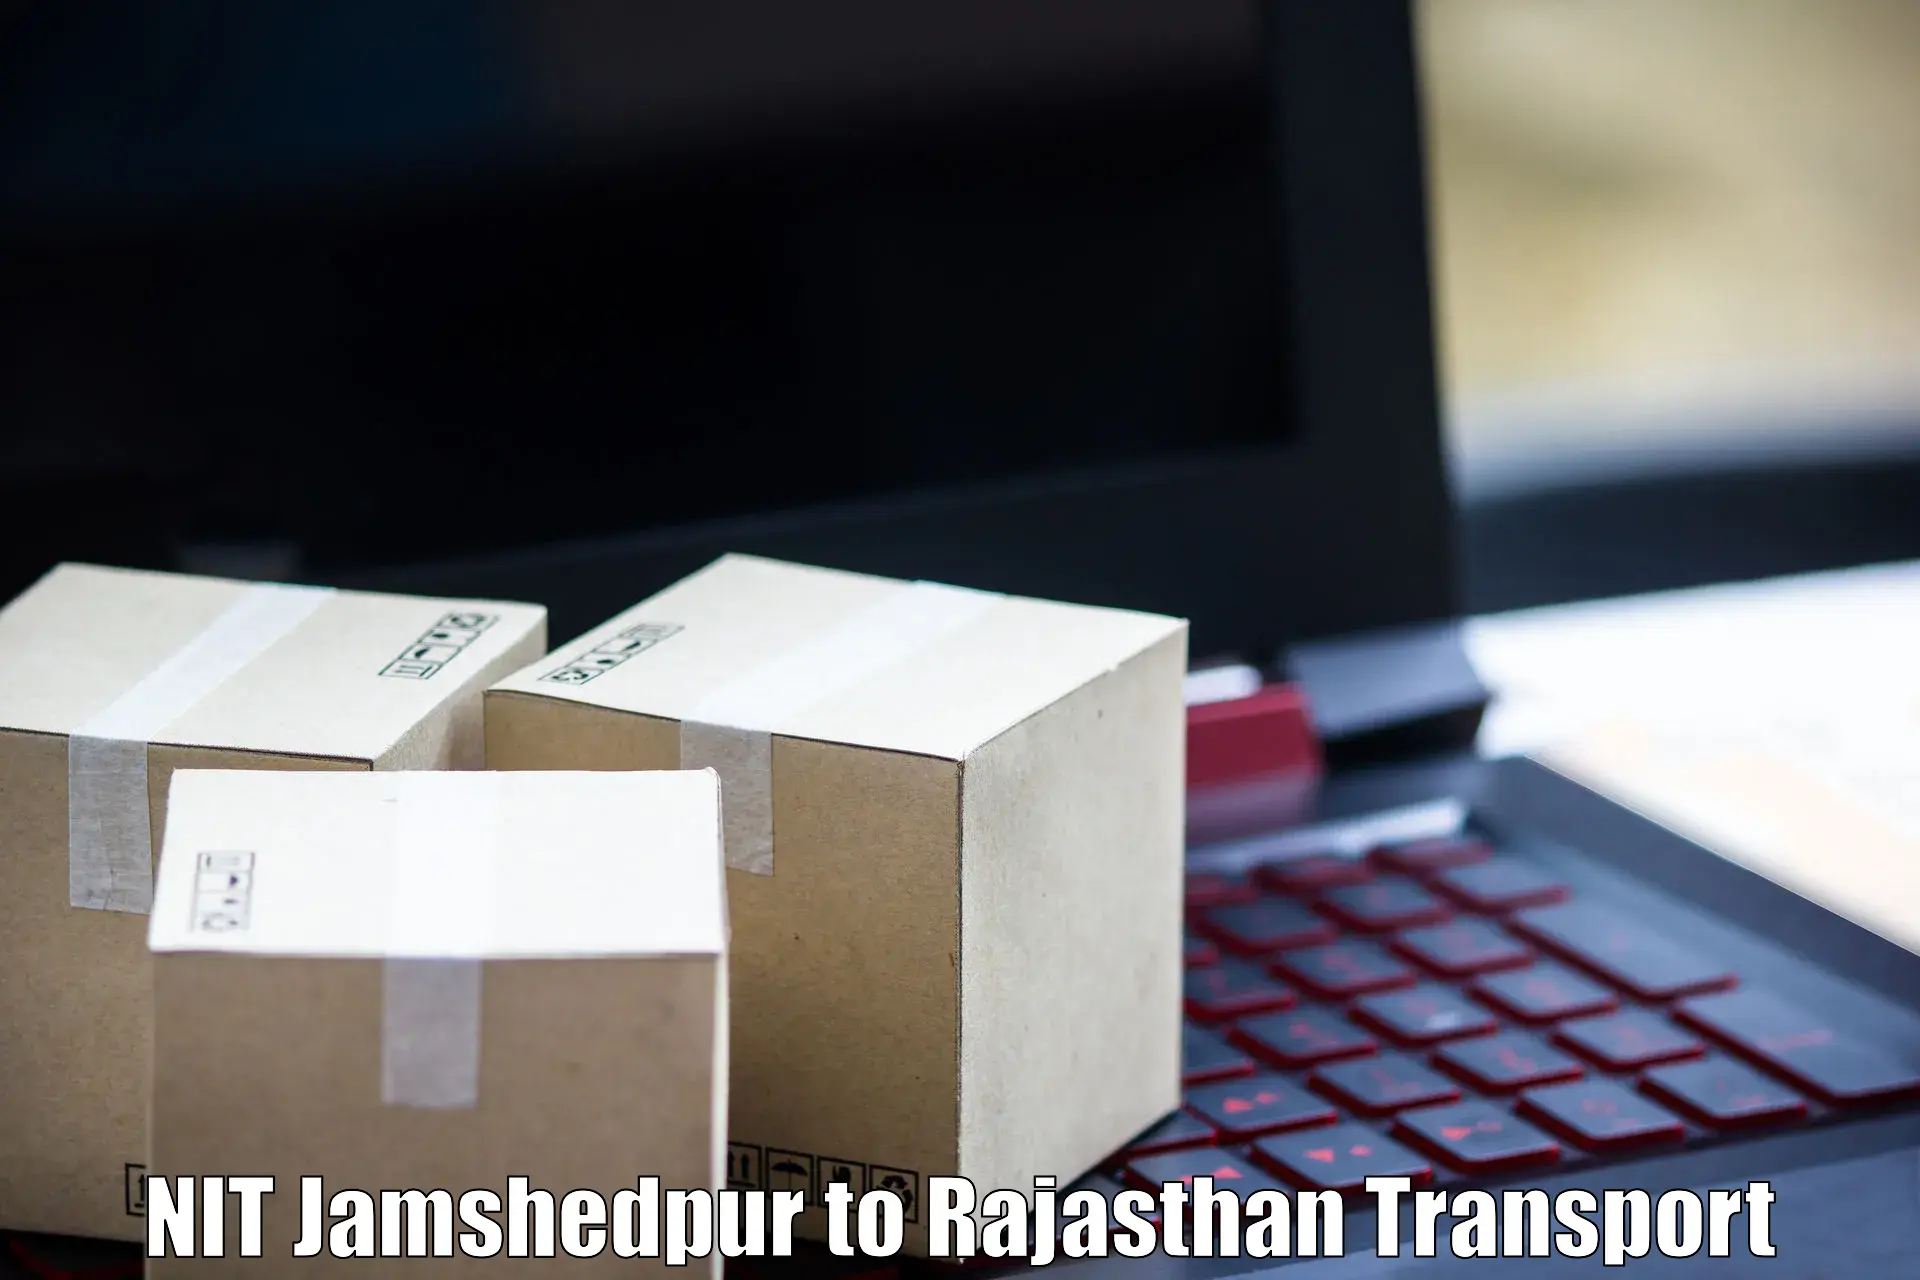 Furniture transport service NIT Jamshedpur to Deshnok